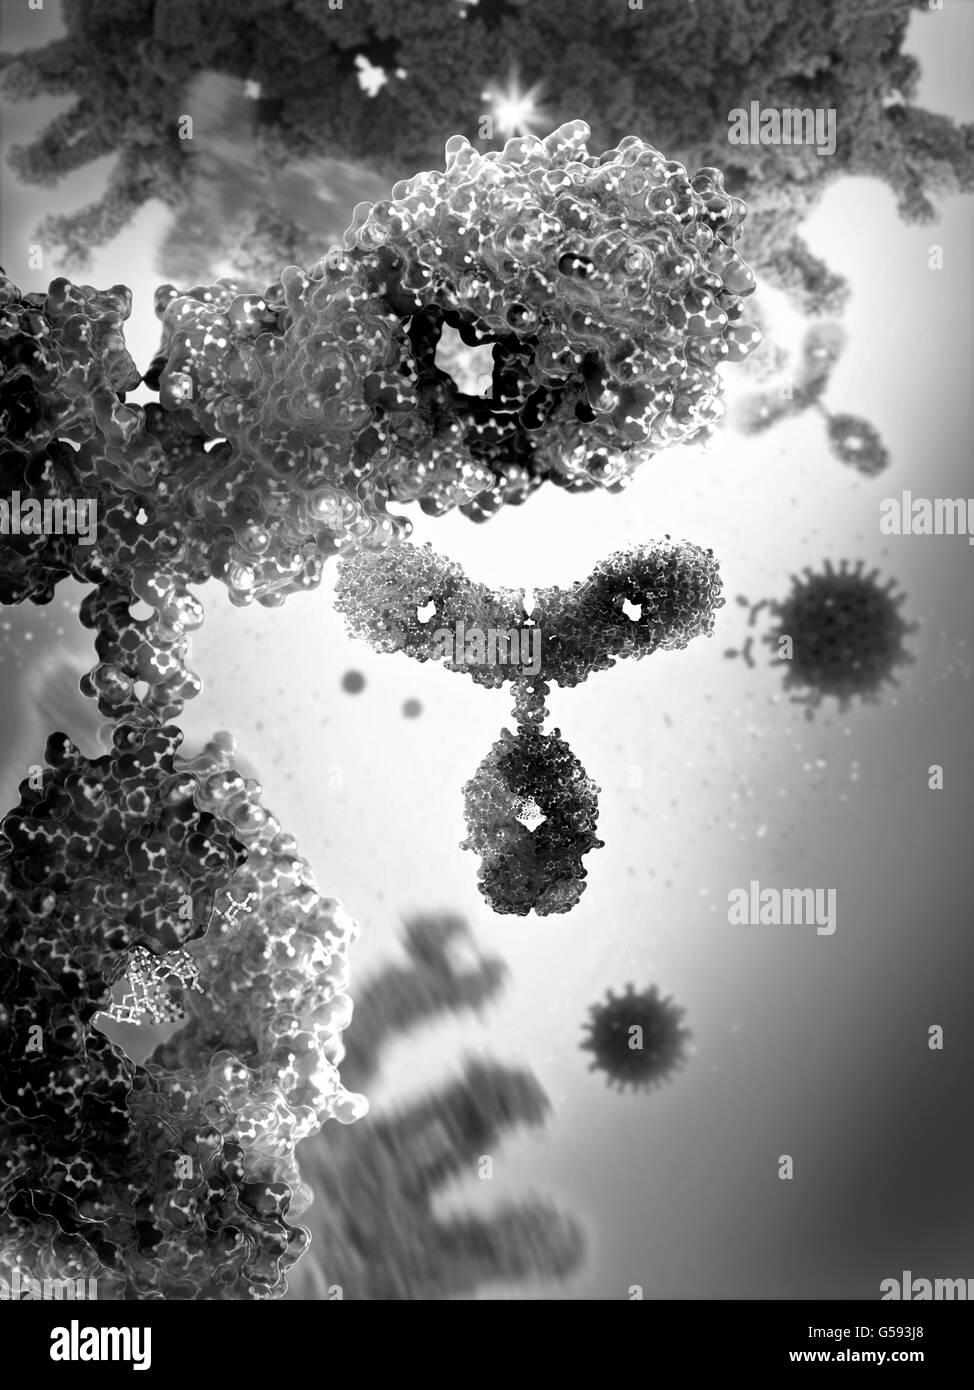 Antikörper aka Immunglobulin G (IgG), einem y-förmigen Protein Teil des menschlichen Immunsystems gegen ausländische Viruspartikel Stockfoto